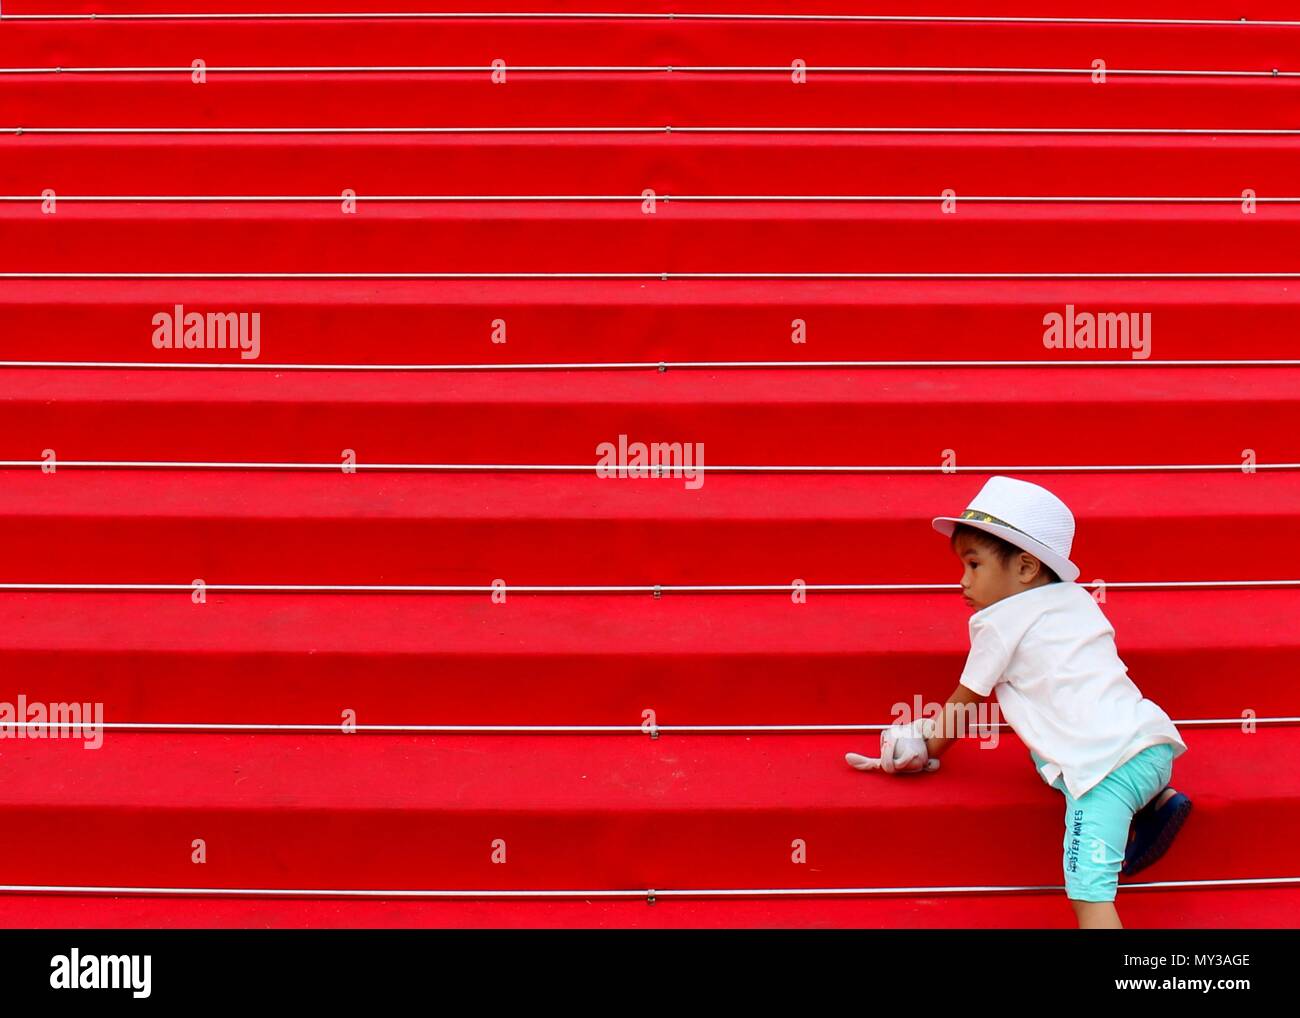 Un enfant acends le célèbre tapis rouge menant au Palais des Festivals et des Congrès. Banque D'Images